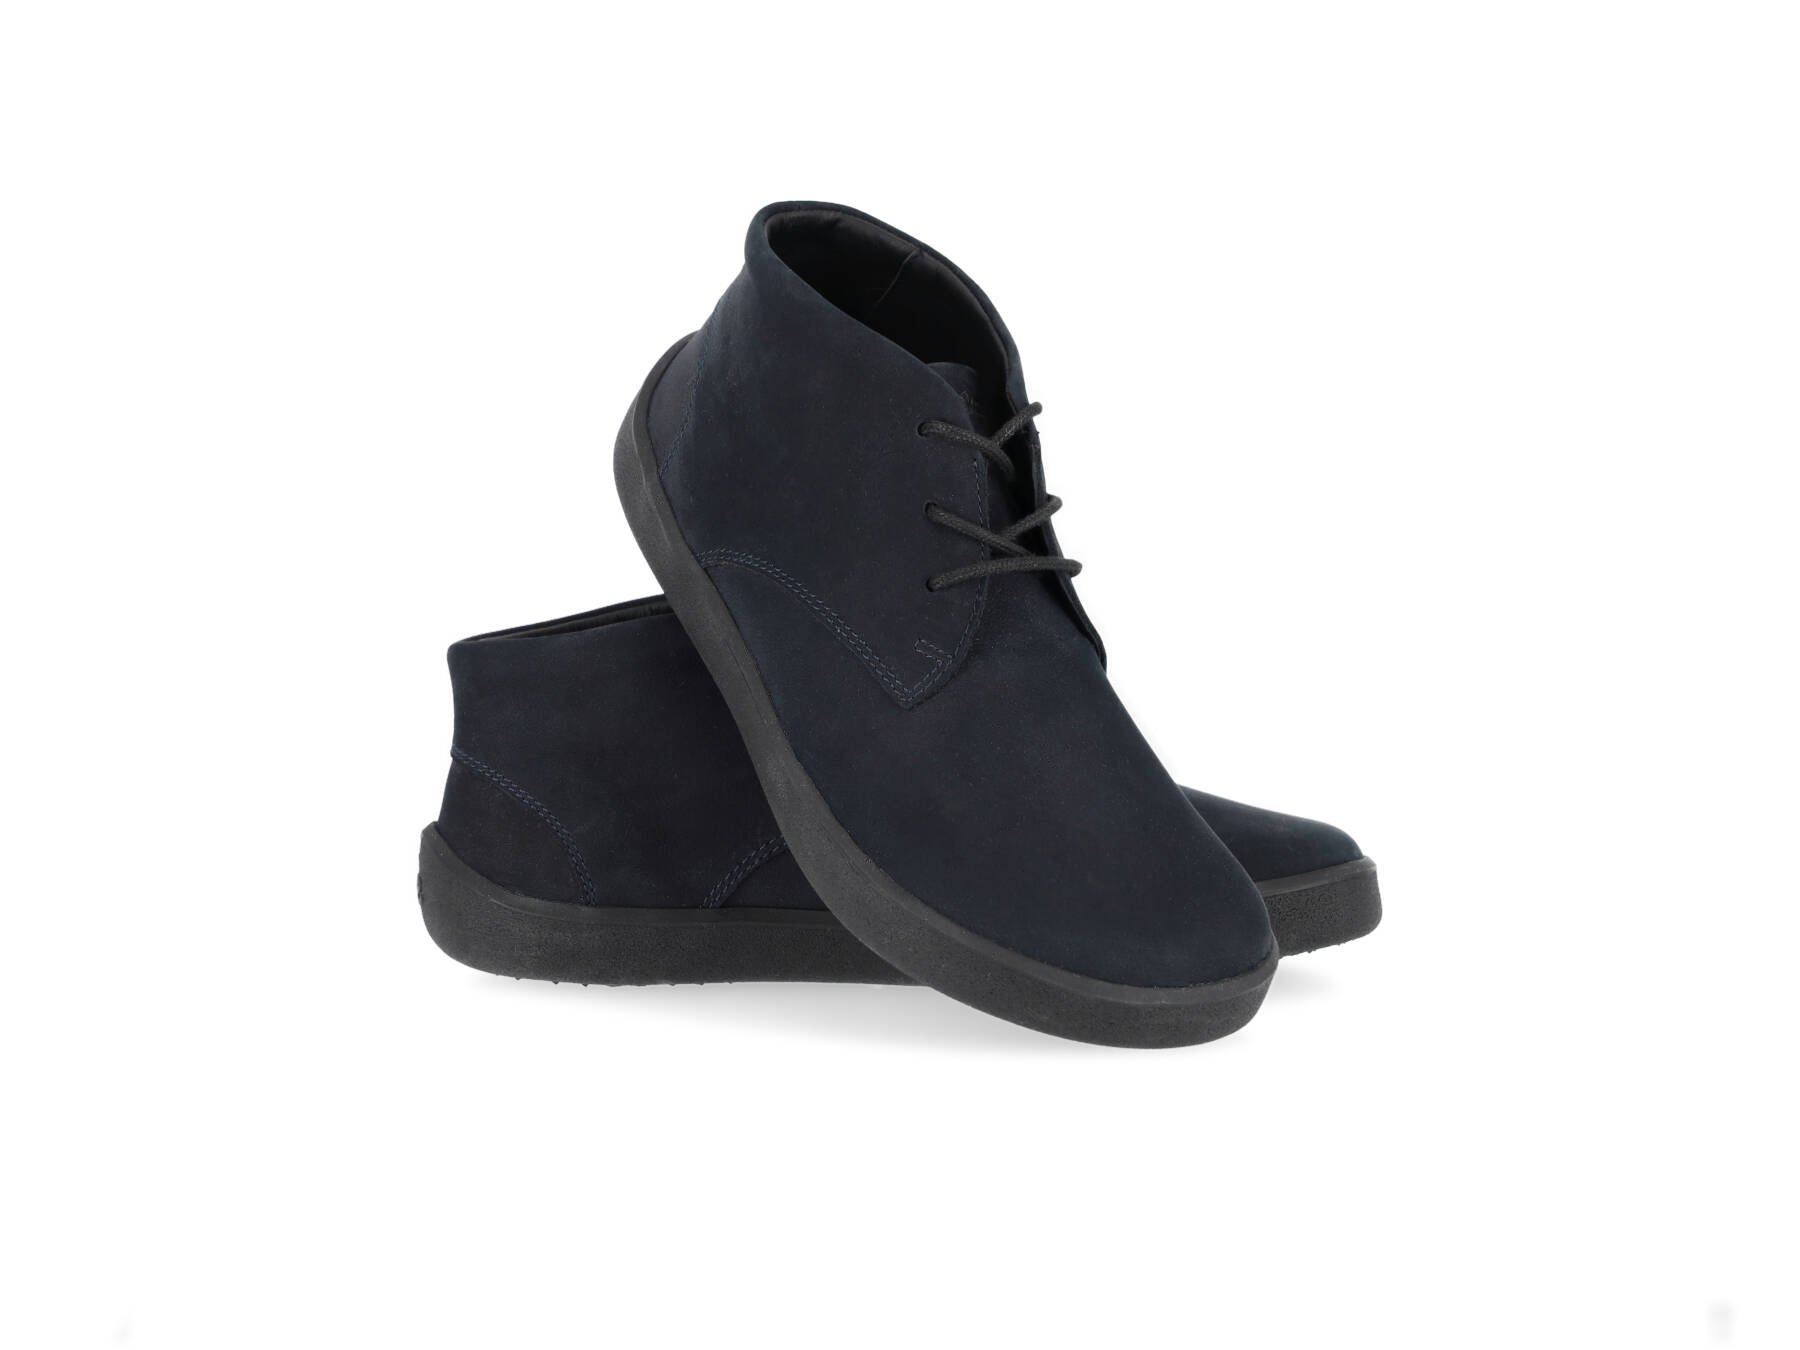 Barefoot Shoes Be Lenka Glide - All Black Matt | Be Lenka